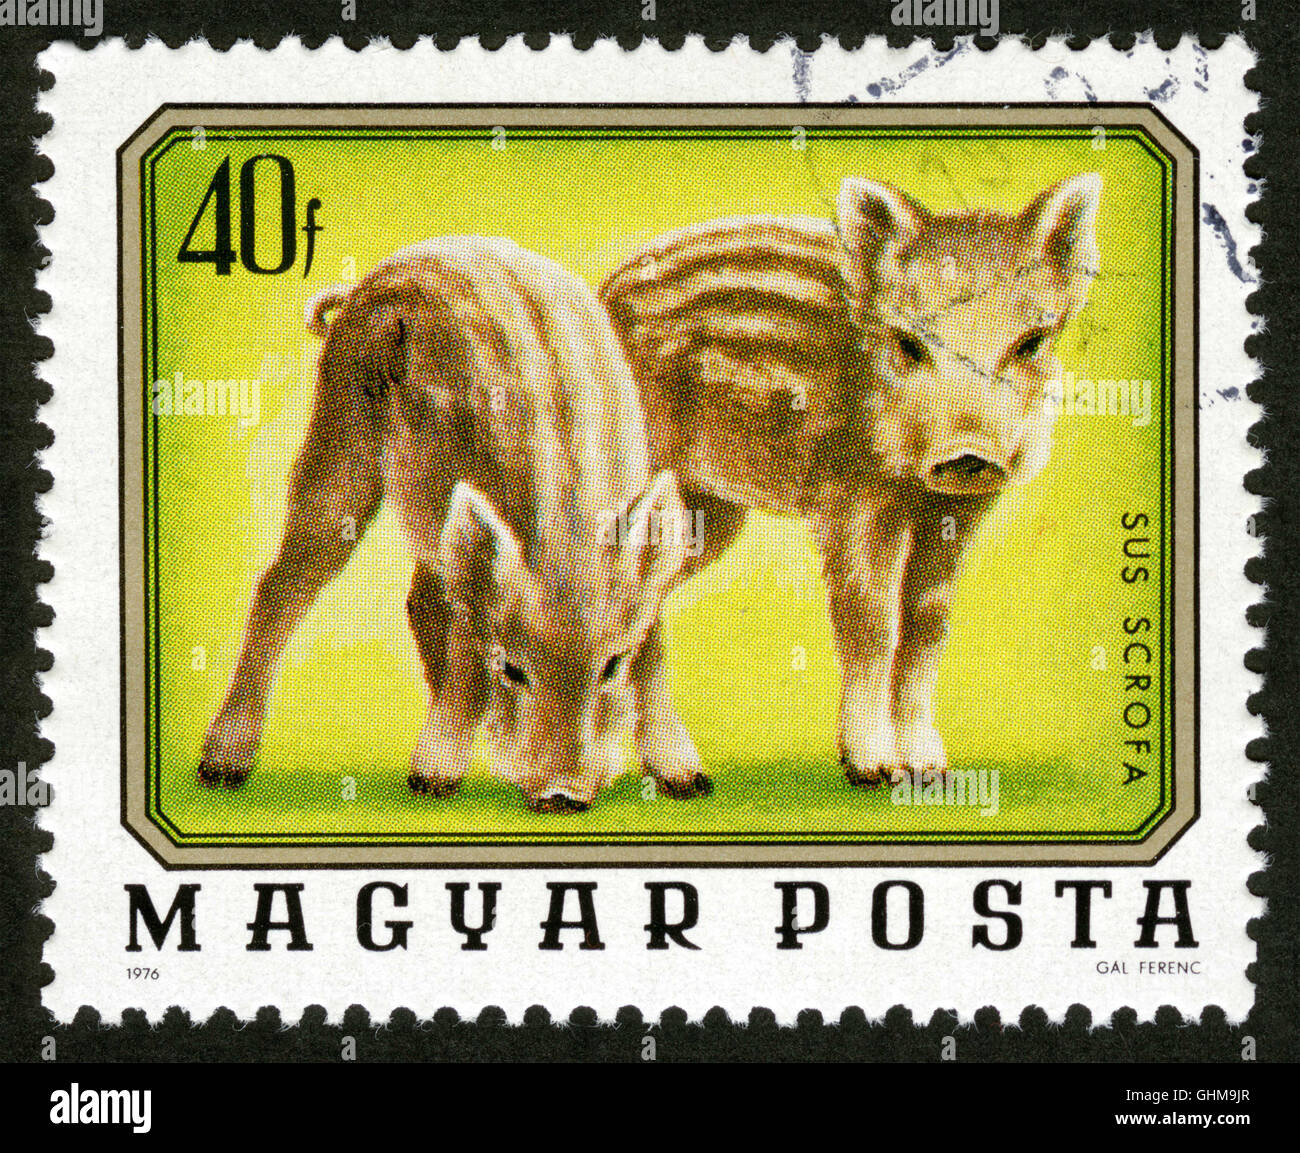 La Hongrie, post mark,stamp,sangliers, animaux, sus scrofa Banque D'Images